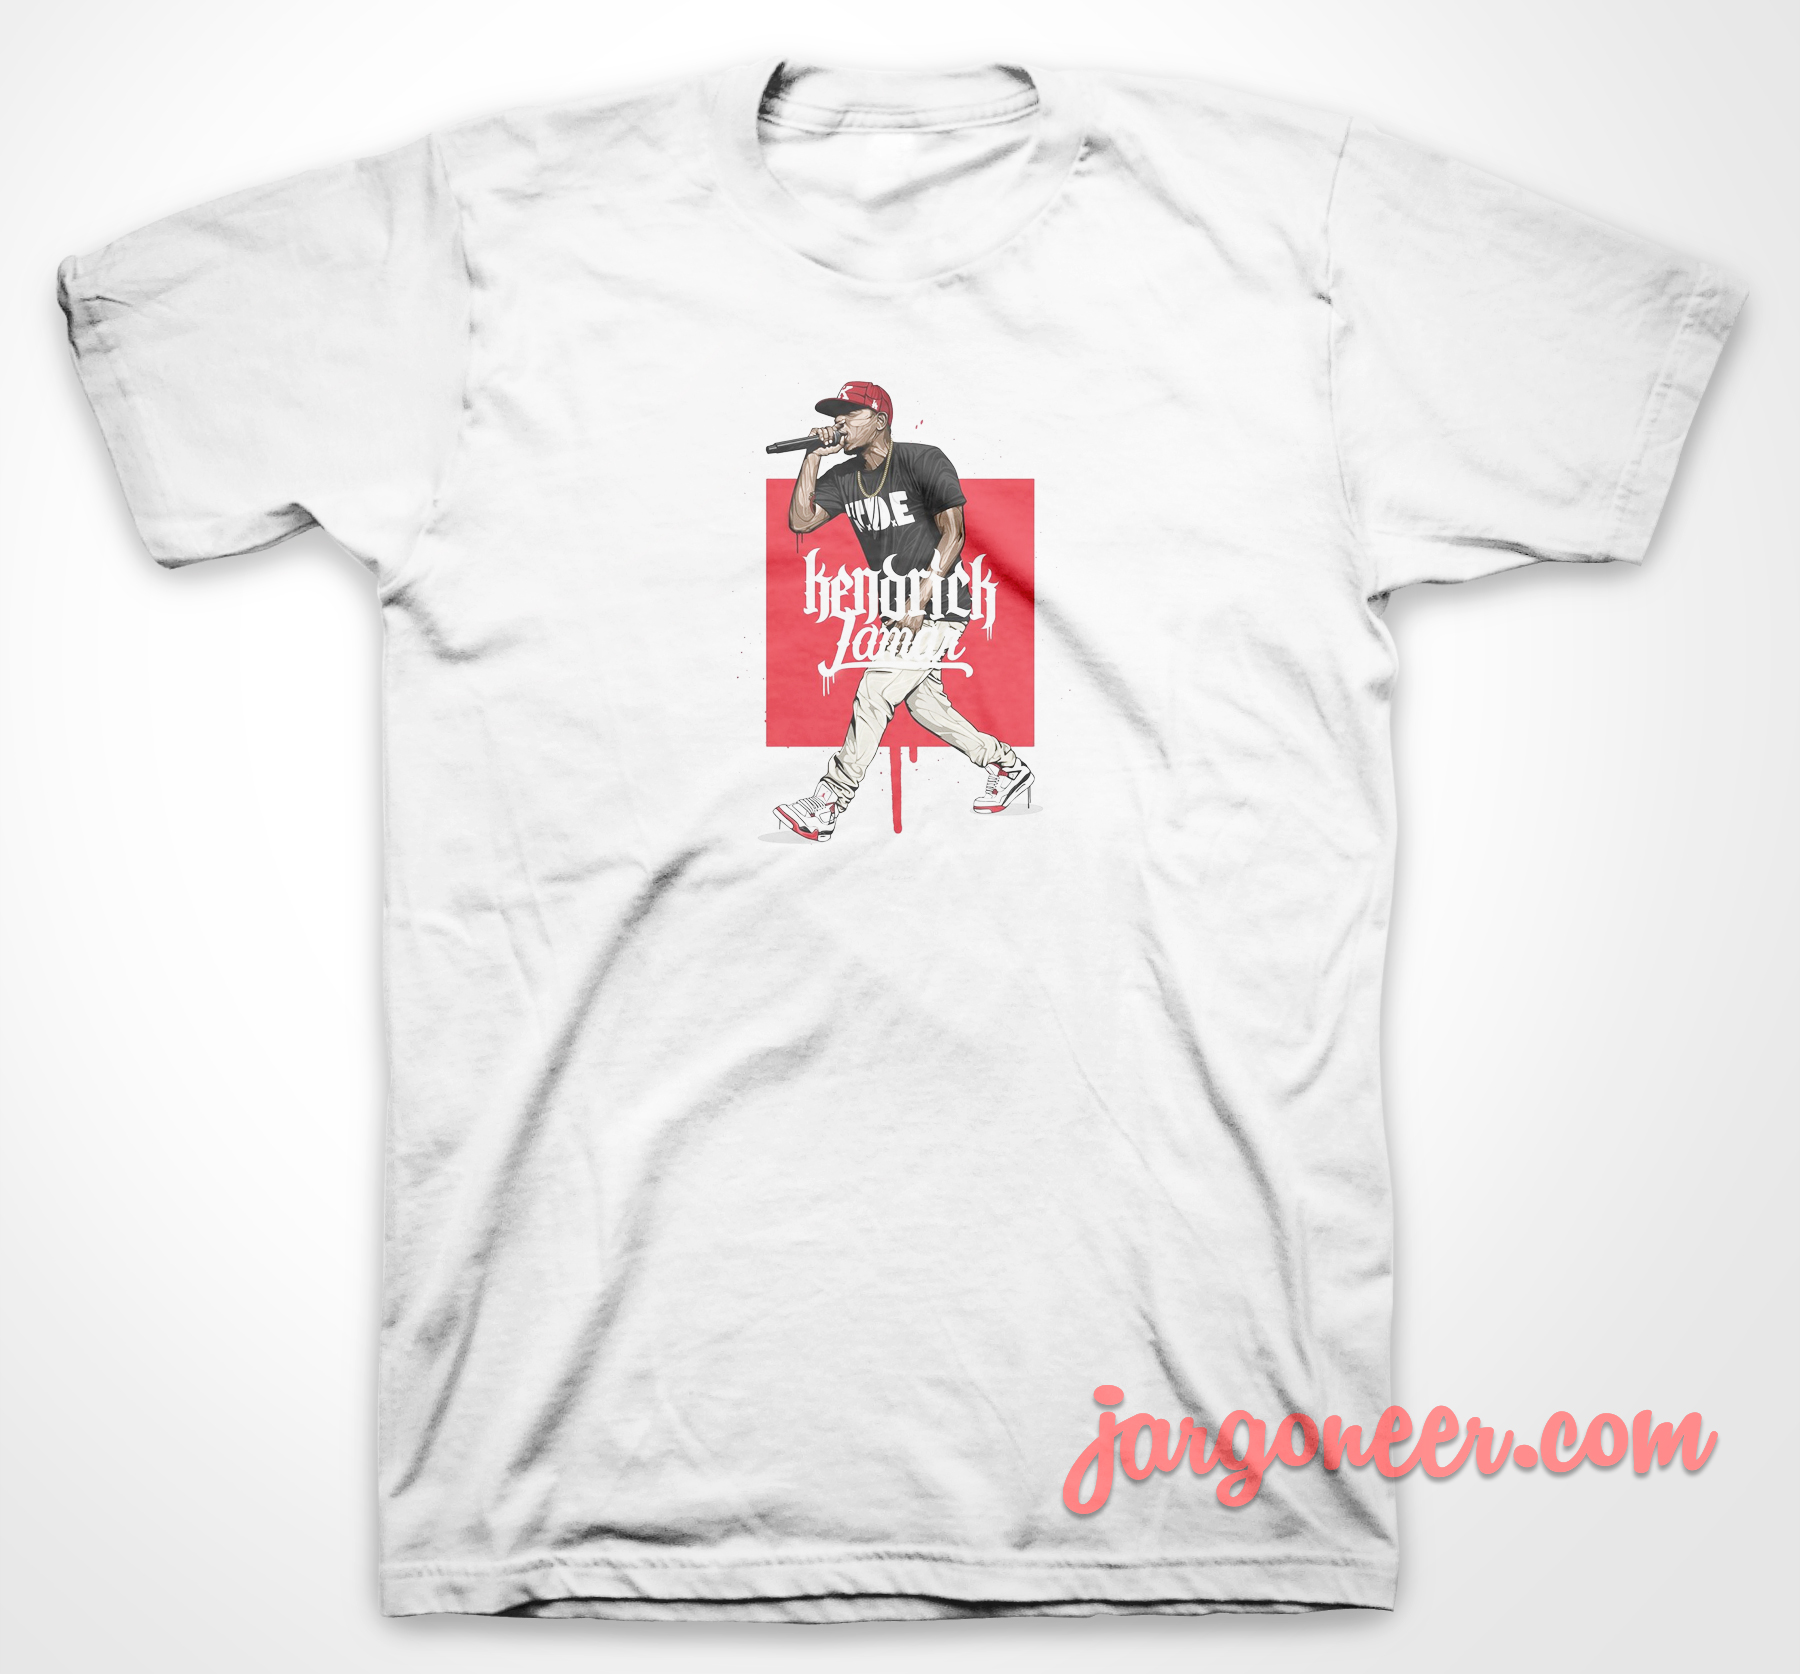 Kendrick Lamar - Shop Unique Graphic Cool Shirt Designs